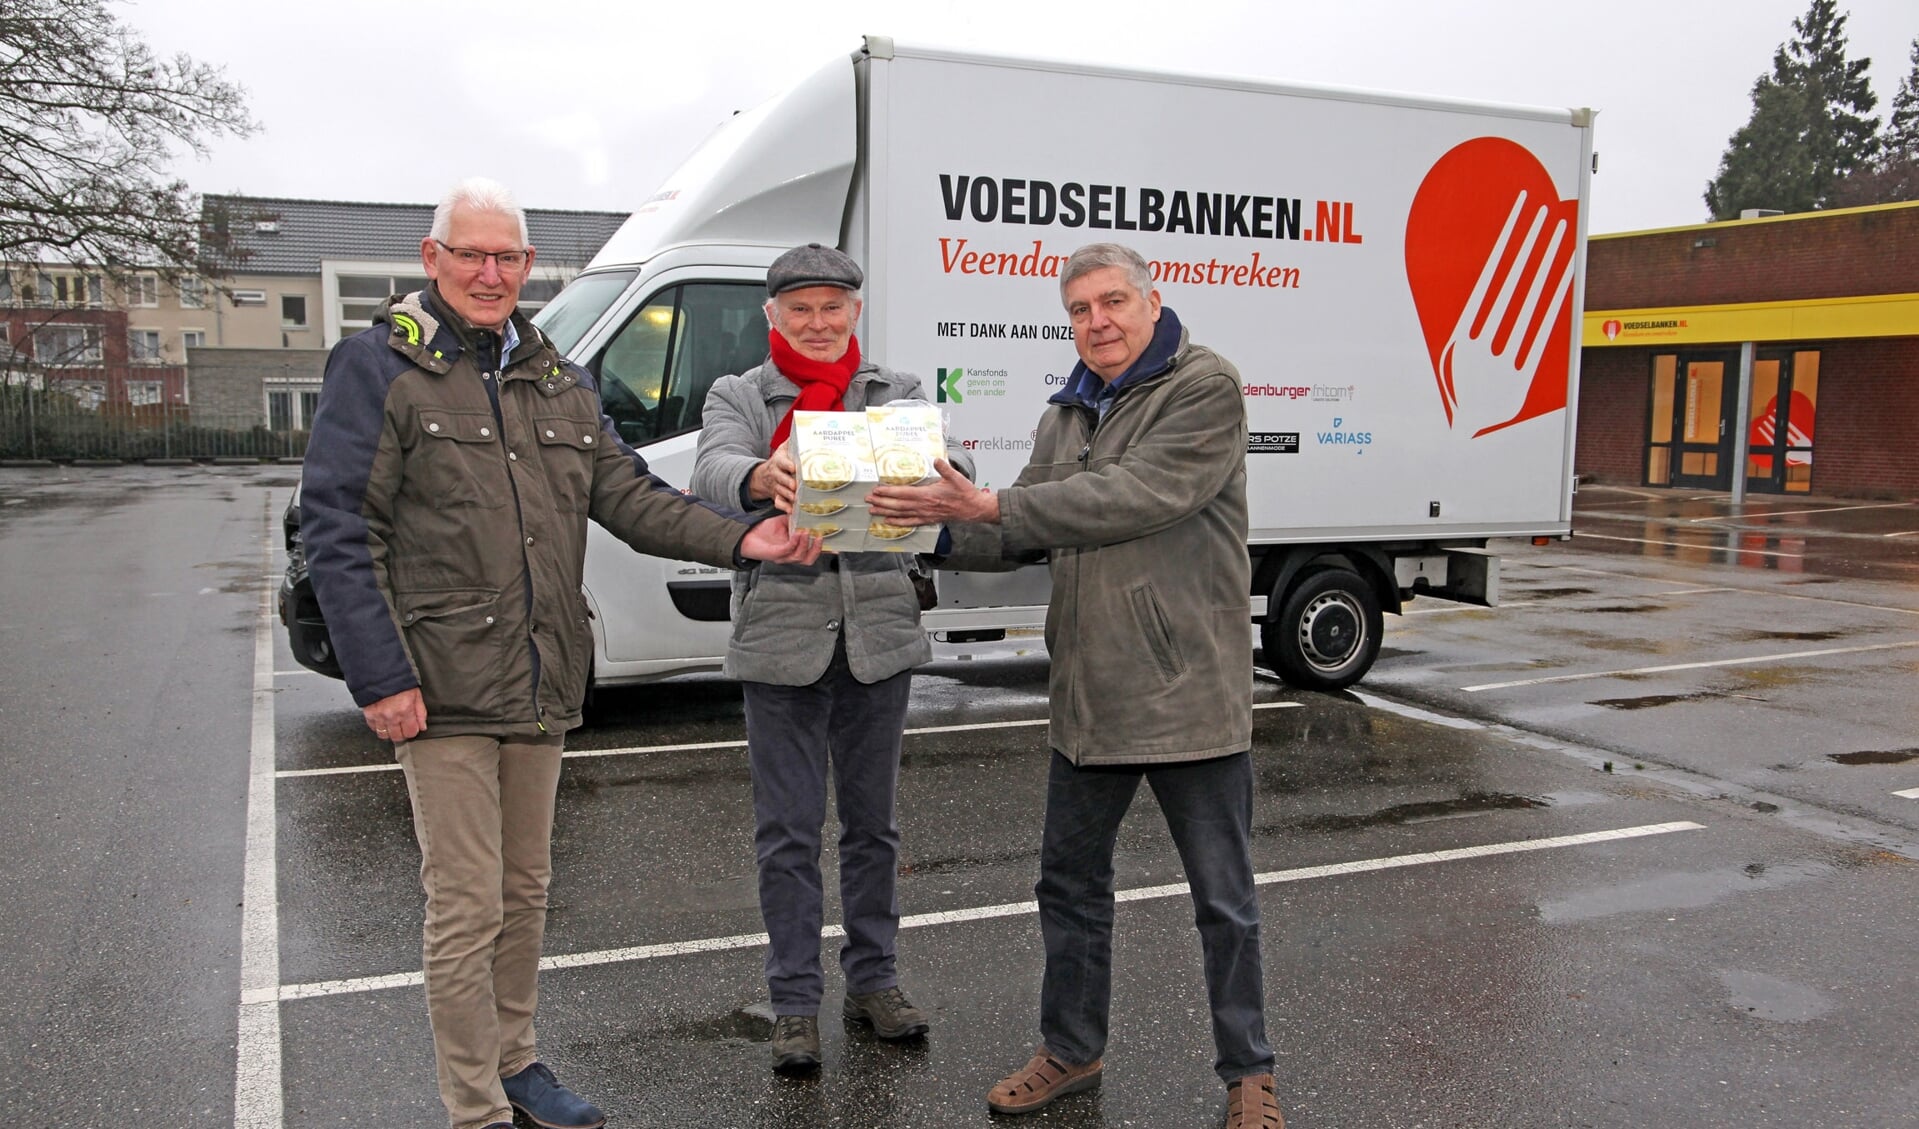 De voedselproducten worden symbolisch overgedragen aan de voorzitter van de voedselbank, Klaas Steenhuis. Hij wordt op de foto geflankeerd door Uilko Hofsté (links) en Bernard van Bloemendaal Bos, beiden van de Odd Fellows. Foto: Bert Woltjes.